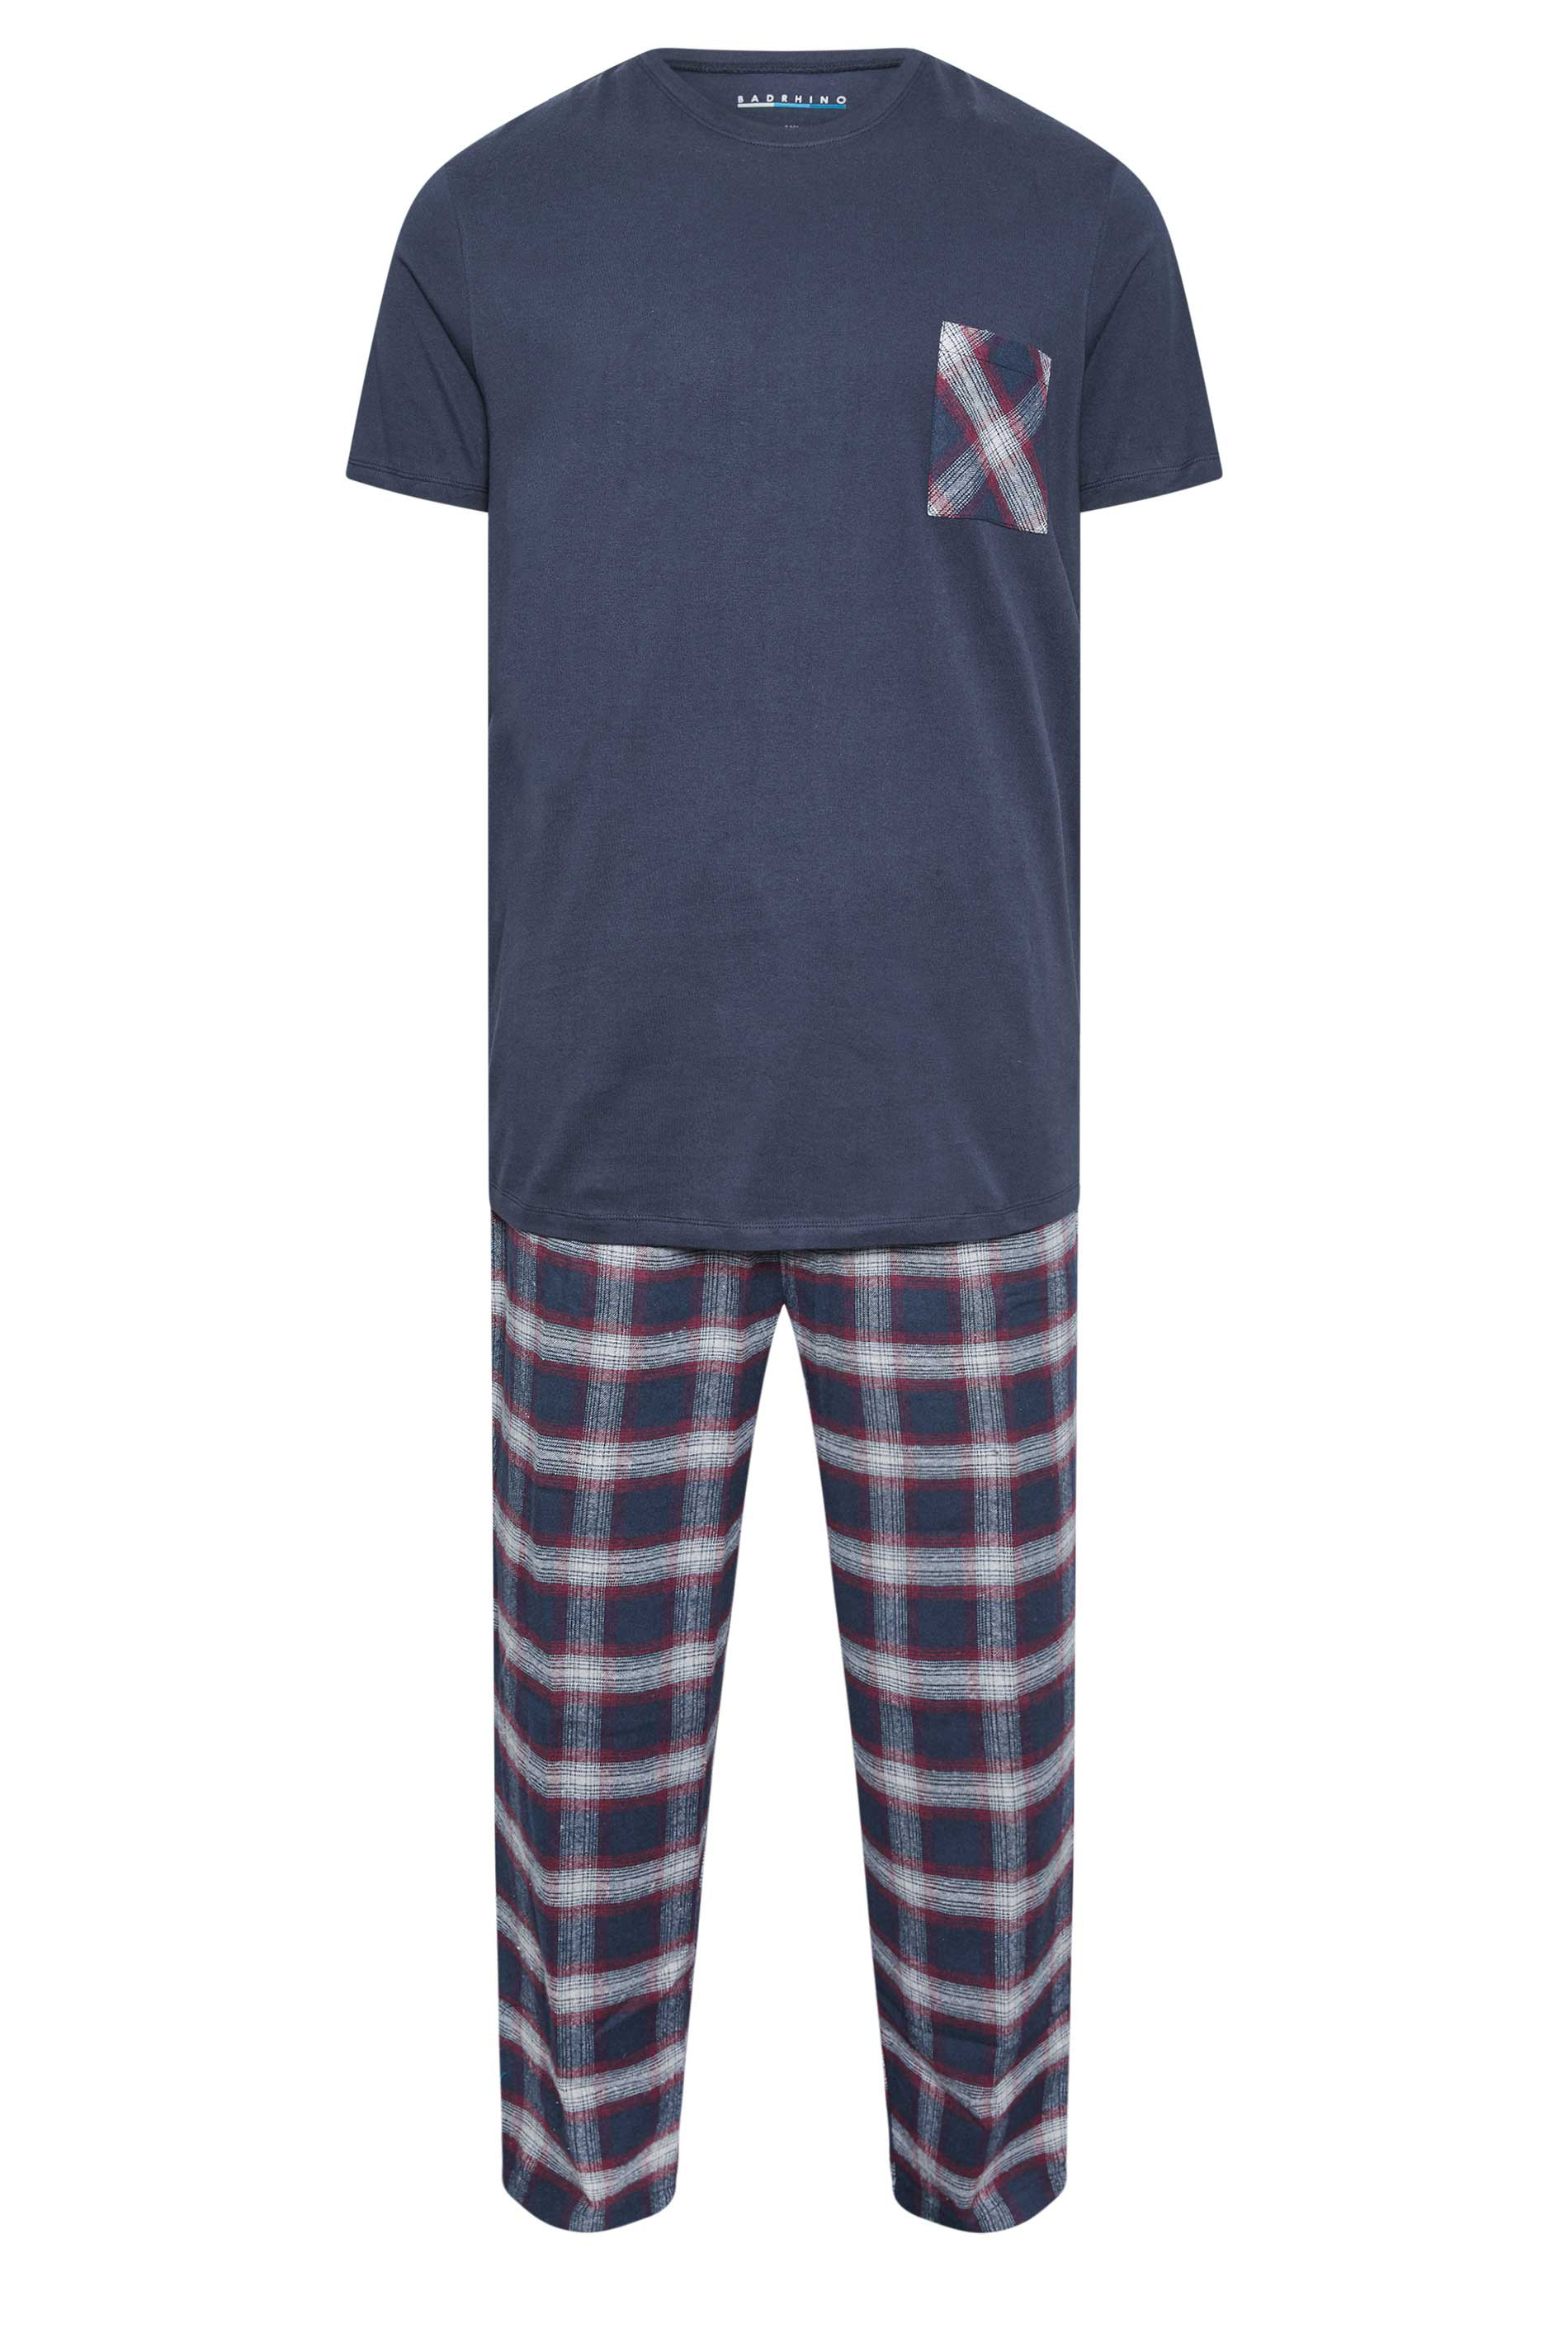 BadRhino Navy and Red T-Shirt and Check Trousers Pyjama Set | BadRhino 3